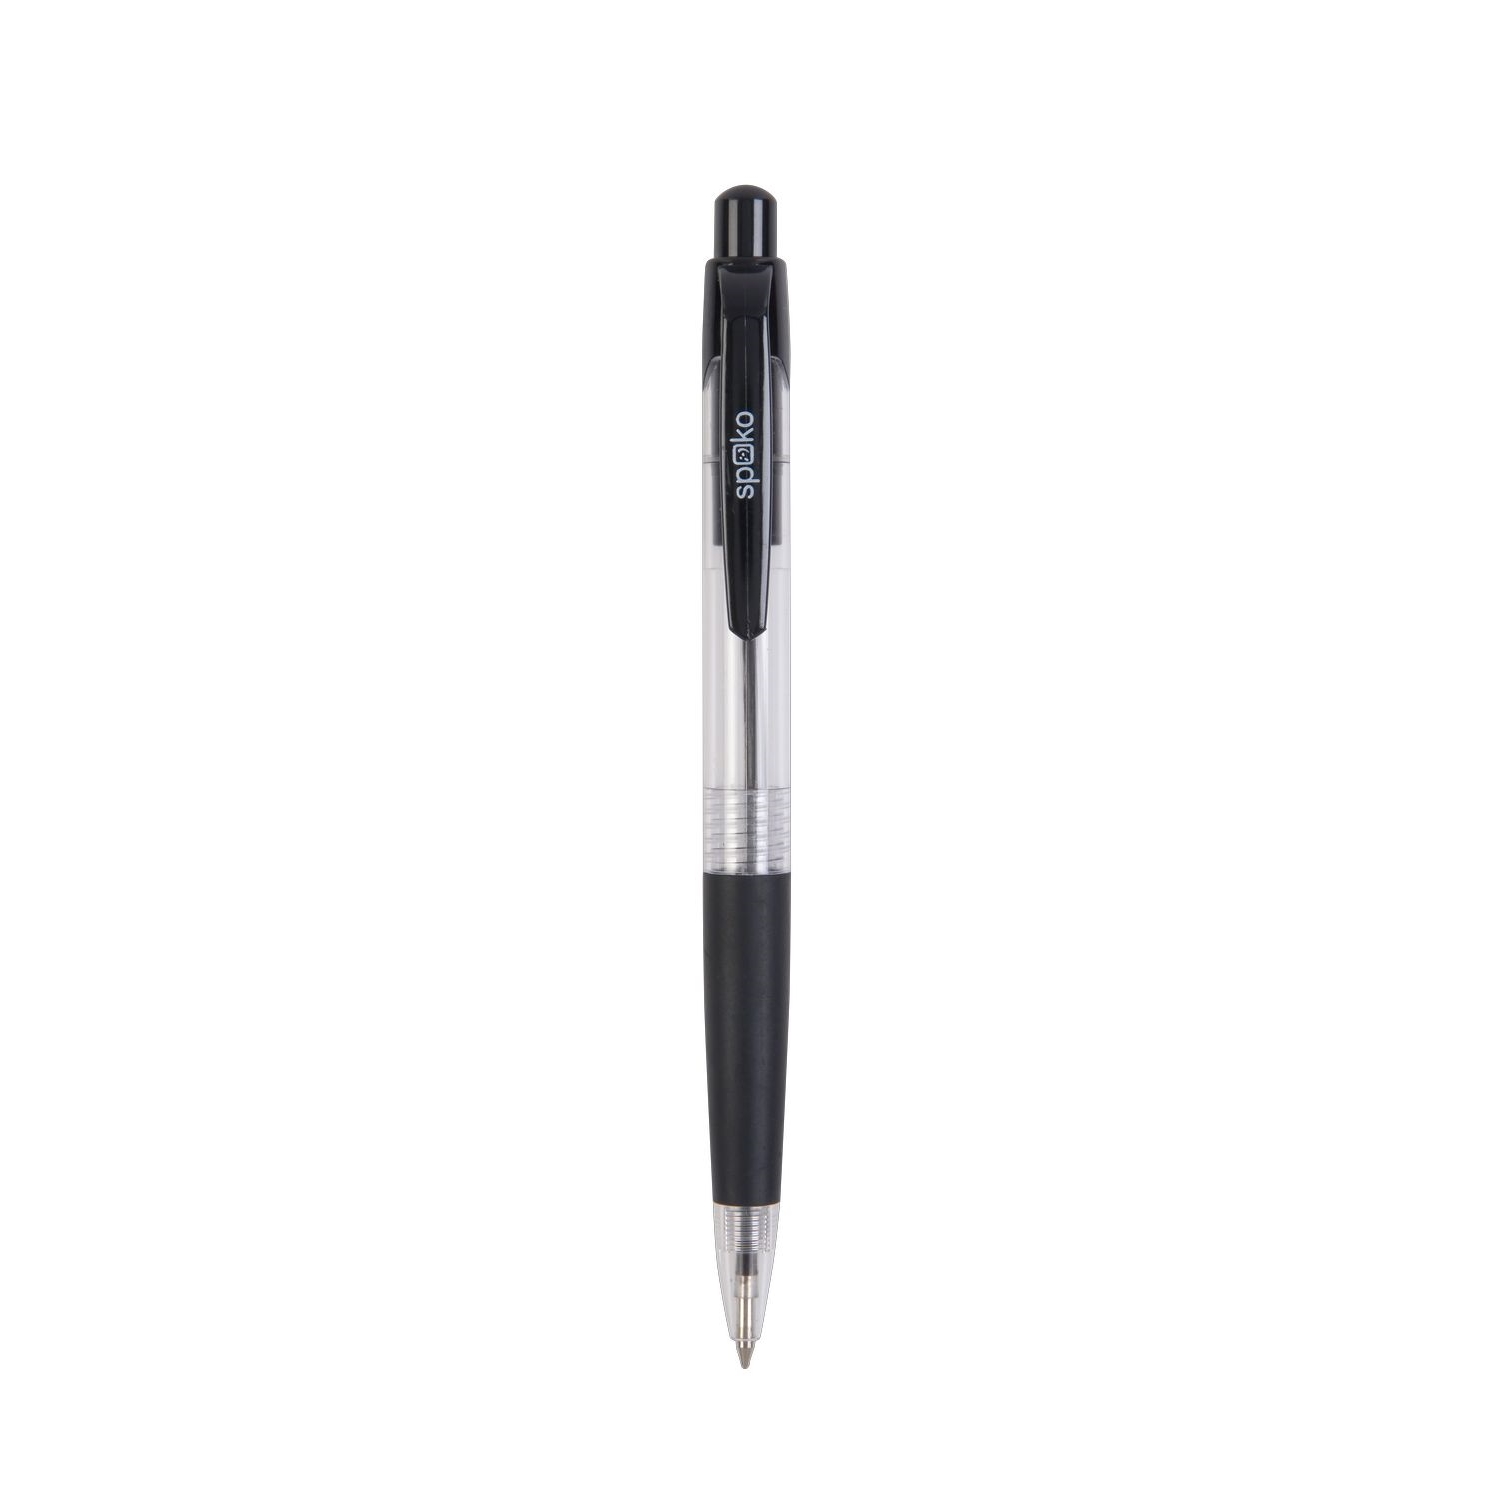 Kuličkové pero Spoko S0112, průhledné, černá náplň, černé